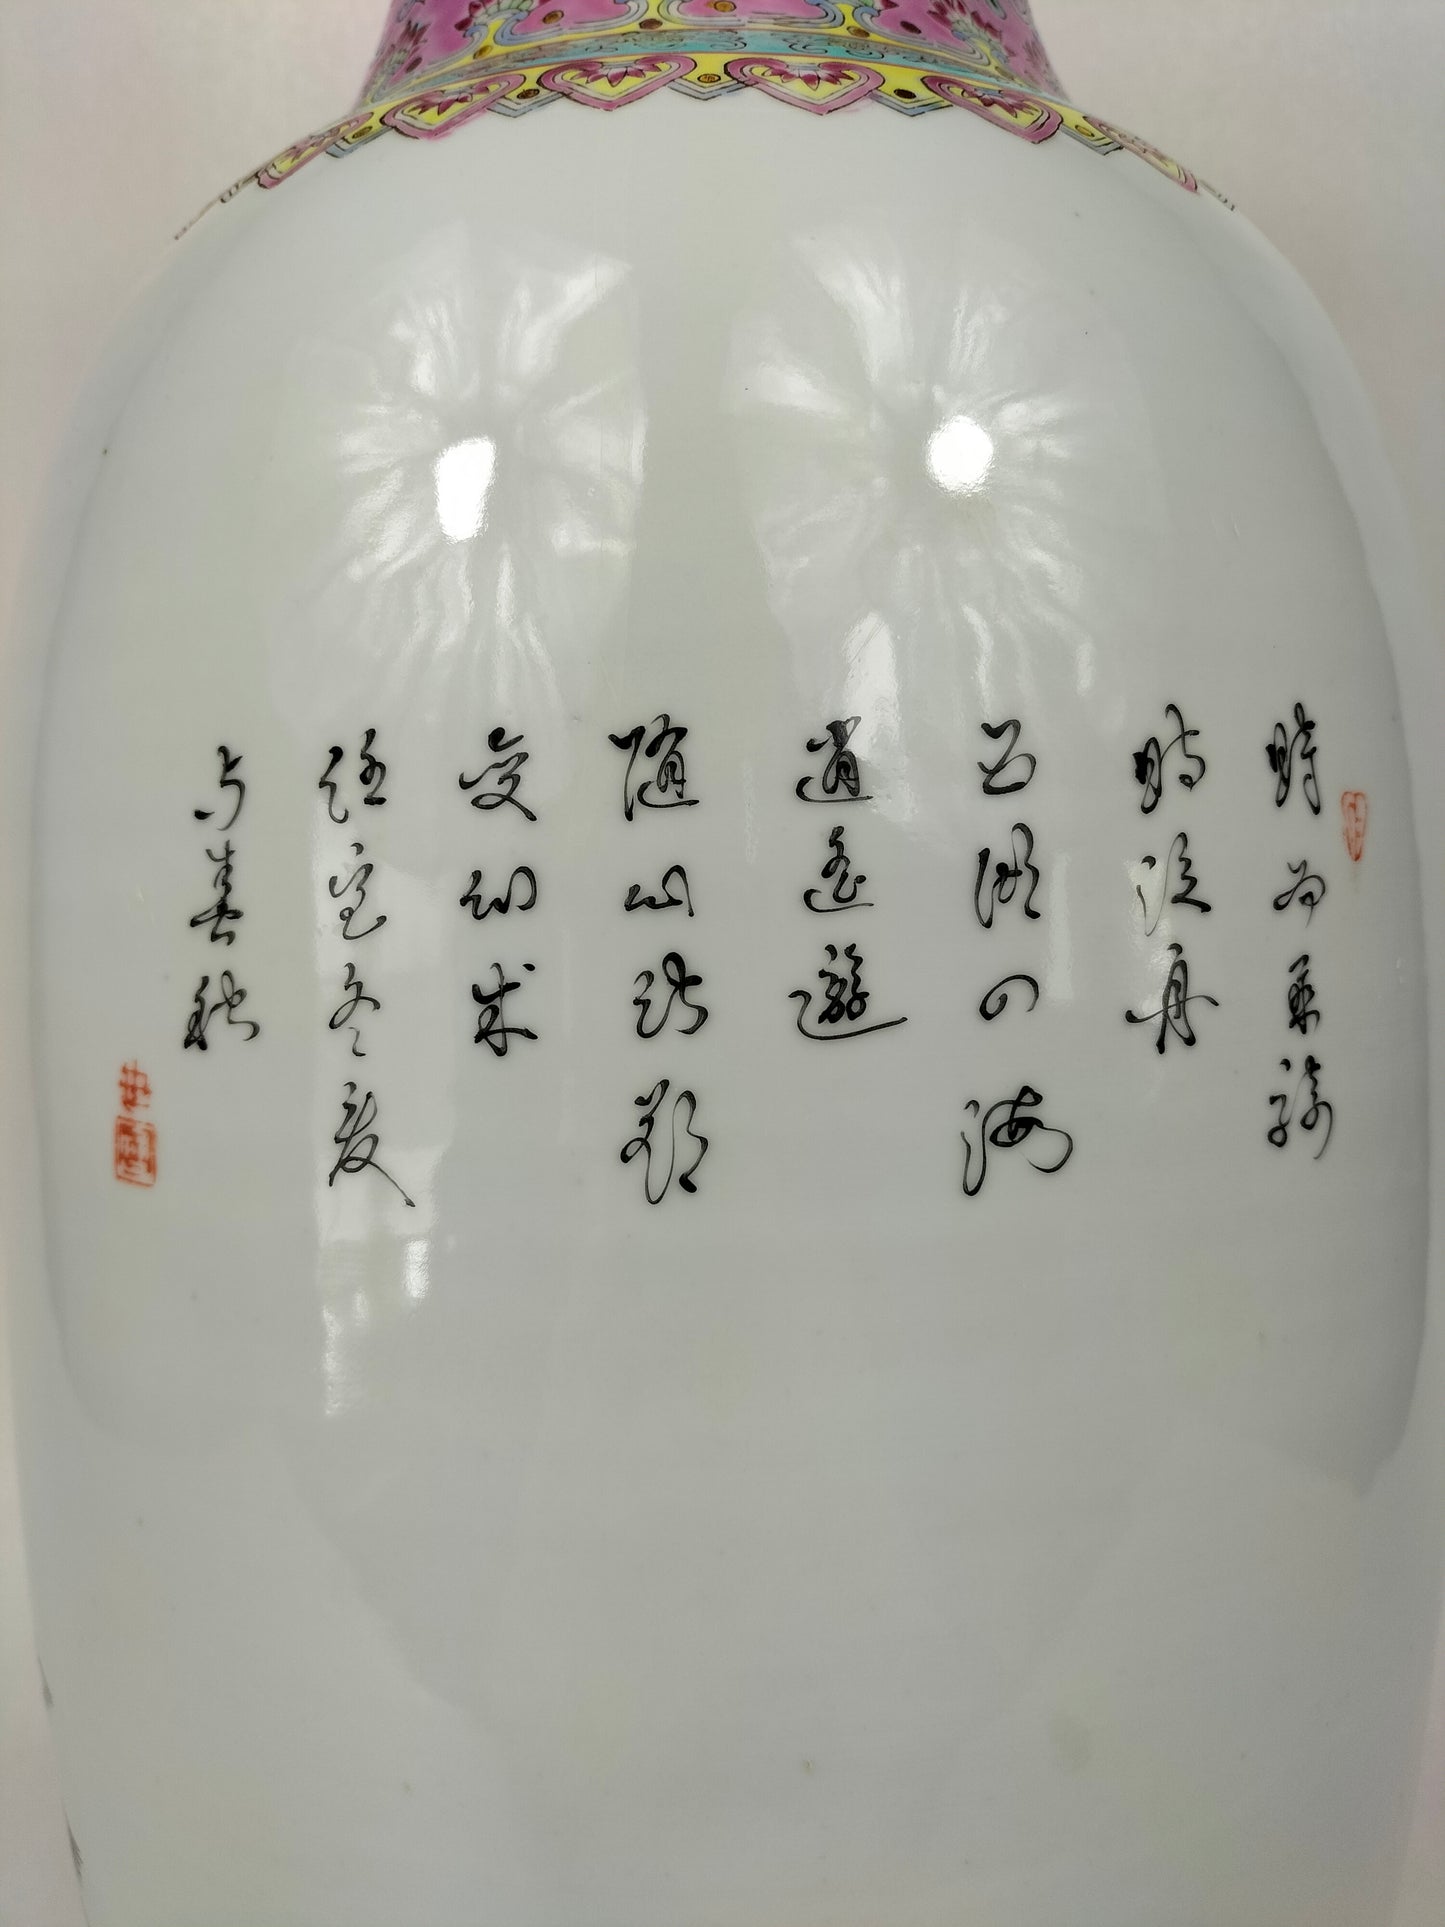 Bình hoa hồng gia đình lớn của Trung Quốc được trang trí với 8 vị bất tử // Jingdezhen - thế kỷ 20